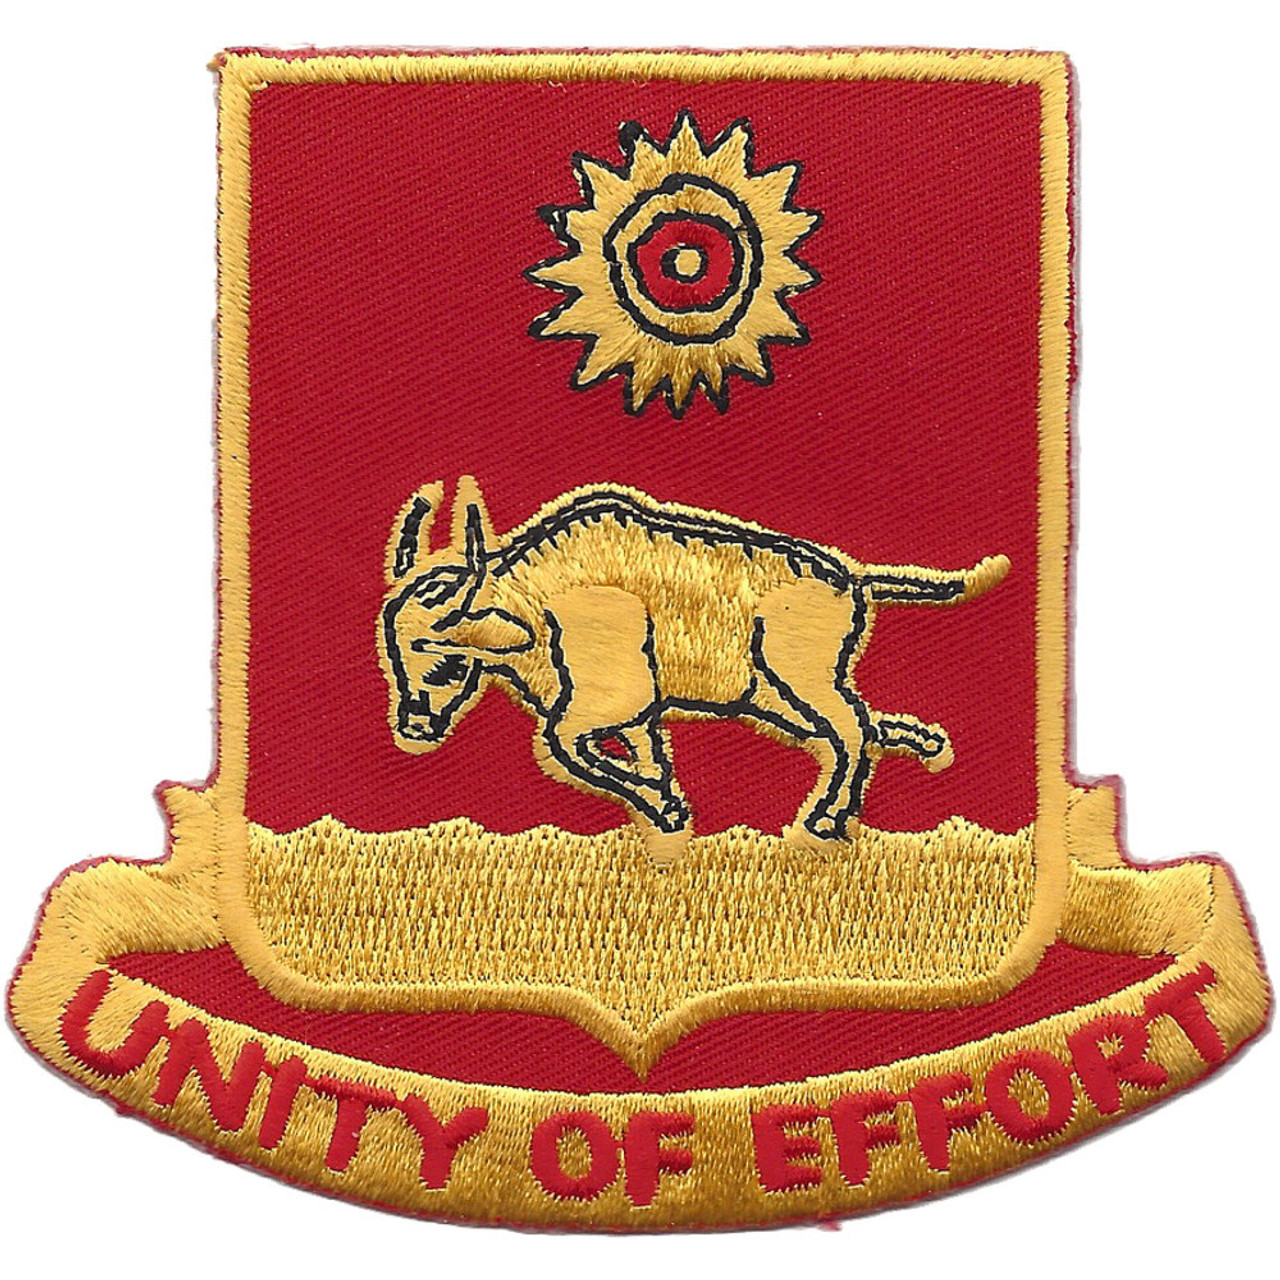 indian army artillery logos